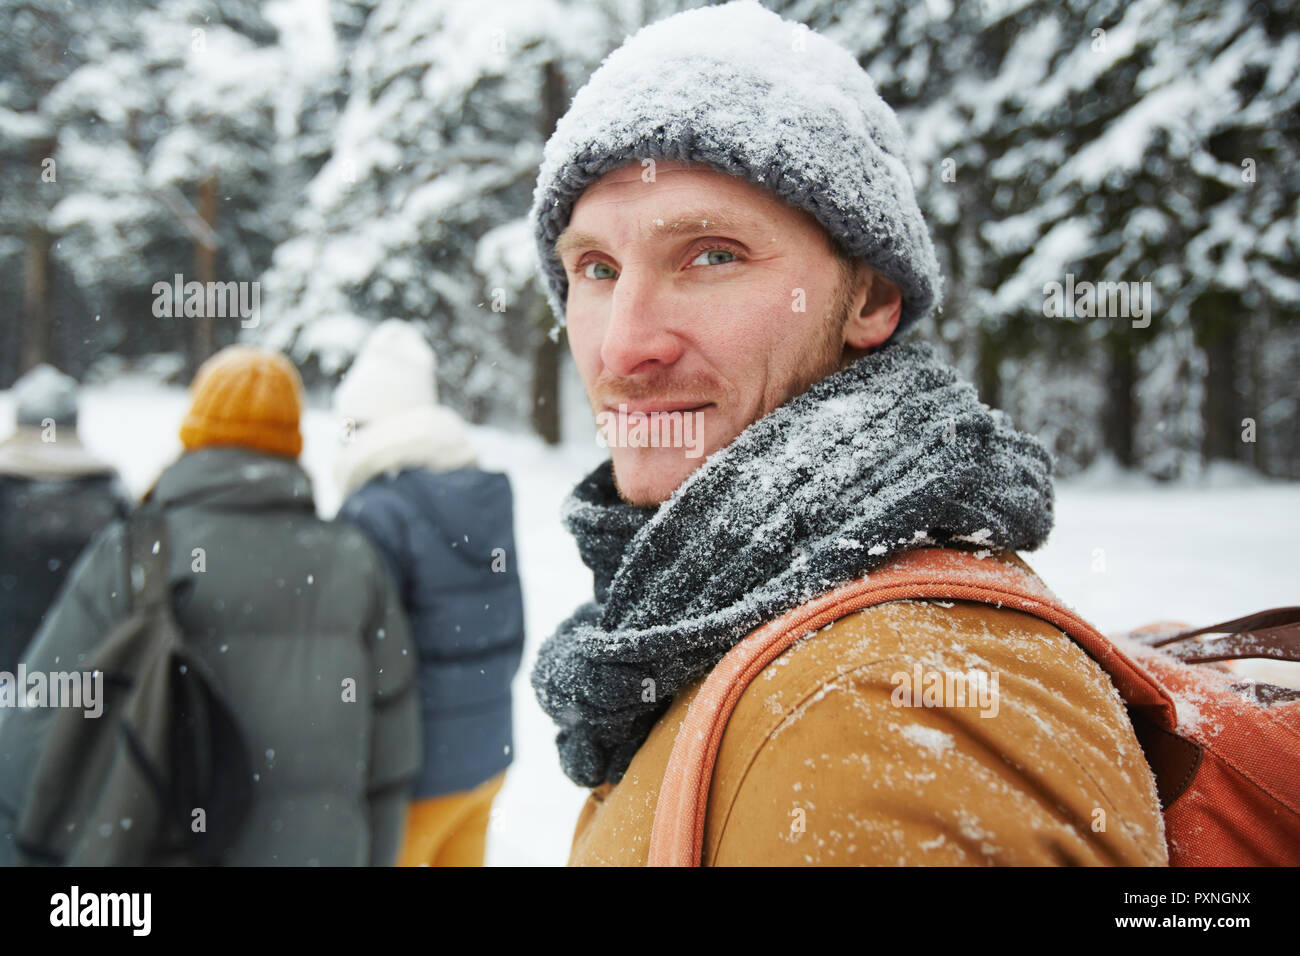 Inhalt hübscher junger männlicher Wanderer in verschneiten Hut und Schal zurück zu drehen, während an der Kamera im Winter Wald suchen, er folgende Gruppe von Reisenden Stockfoto